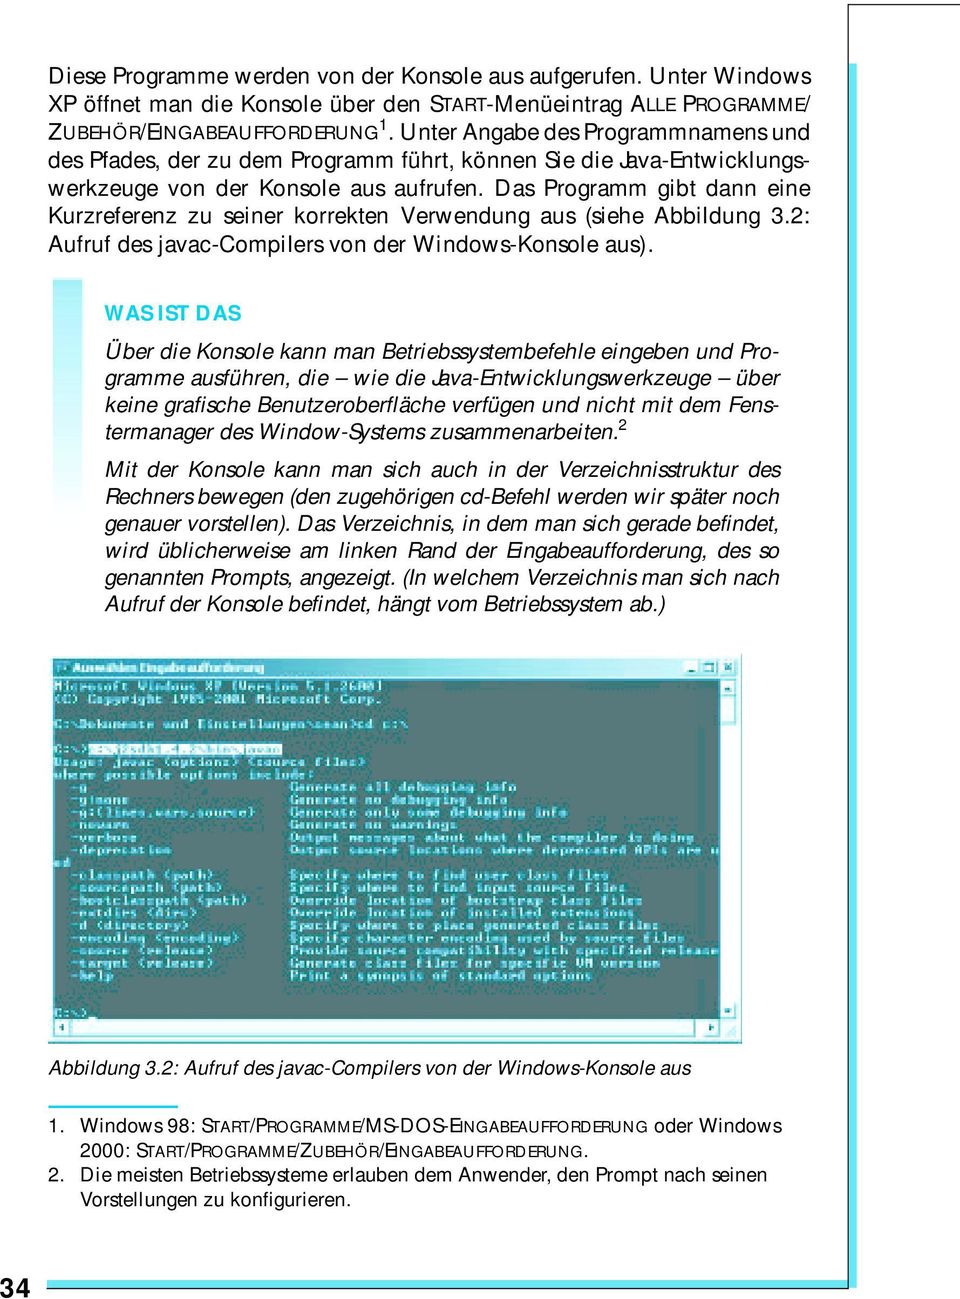 Das Programm gibt dann eine Kurzreferenz zu seiner korrekten Verwendung aus (siehe Abbildung 3.2: Aufruf des javac-compilers von der Windows-Konsole aus).